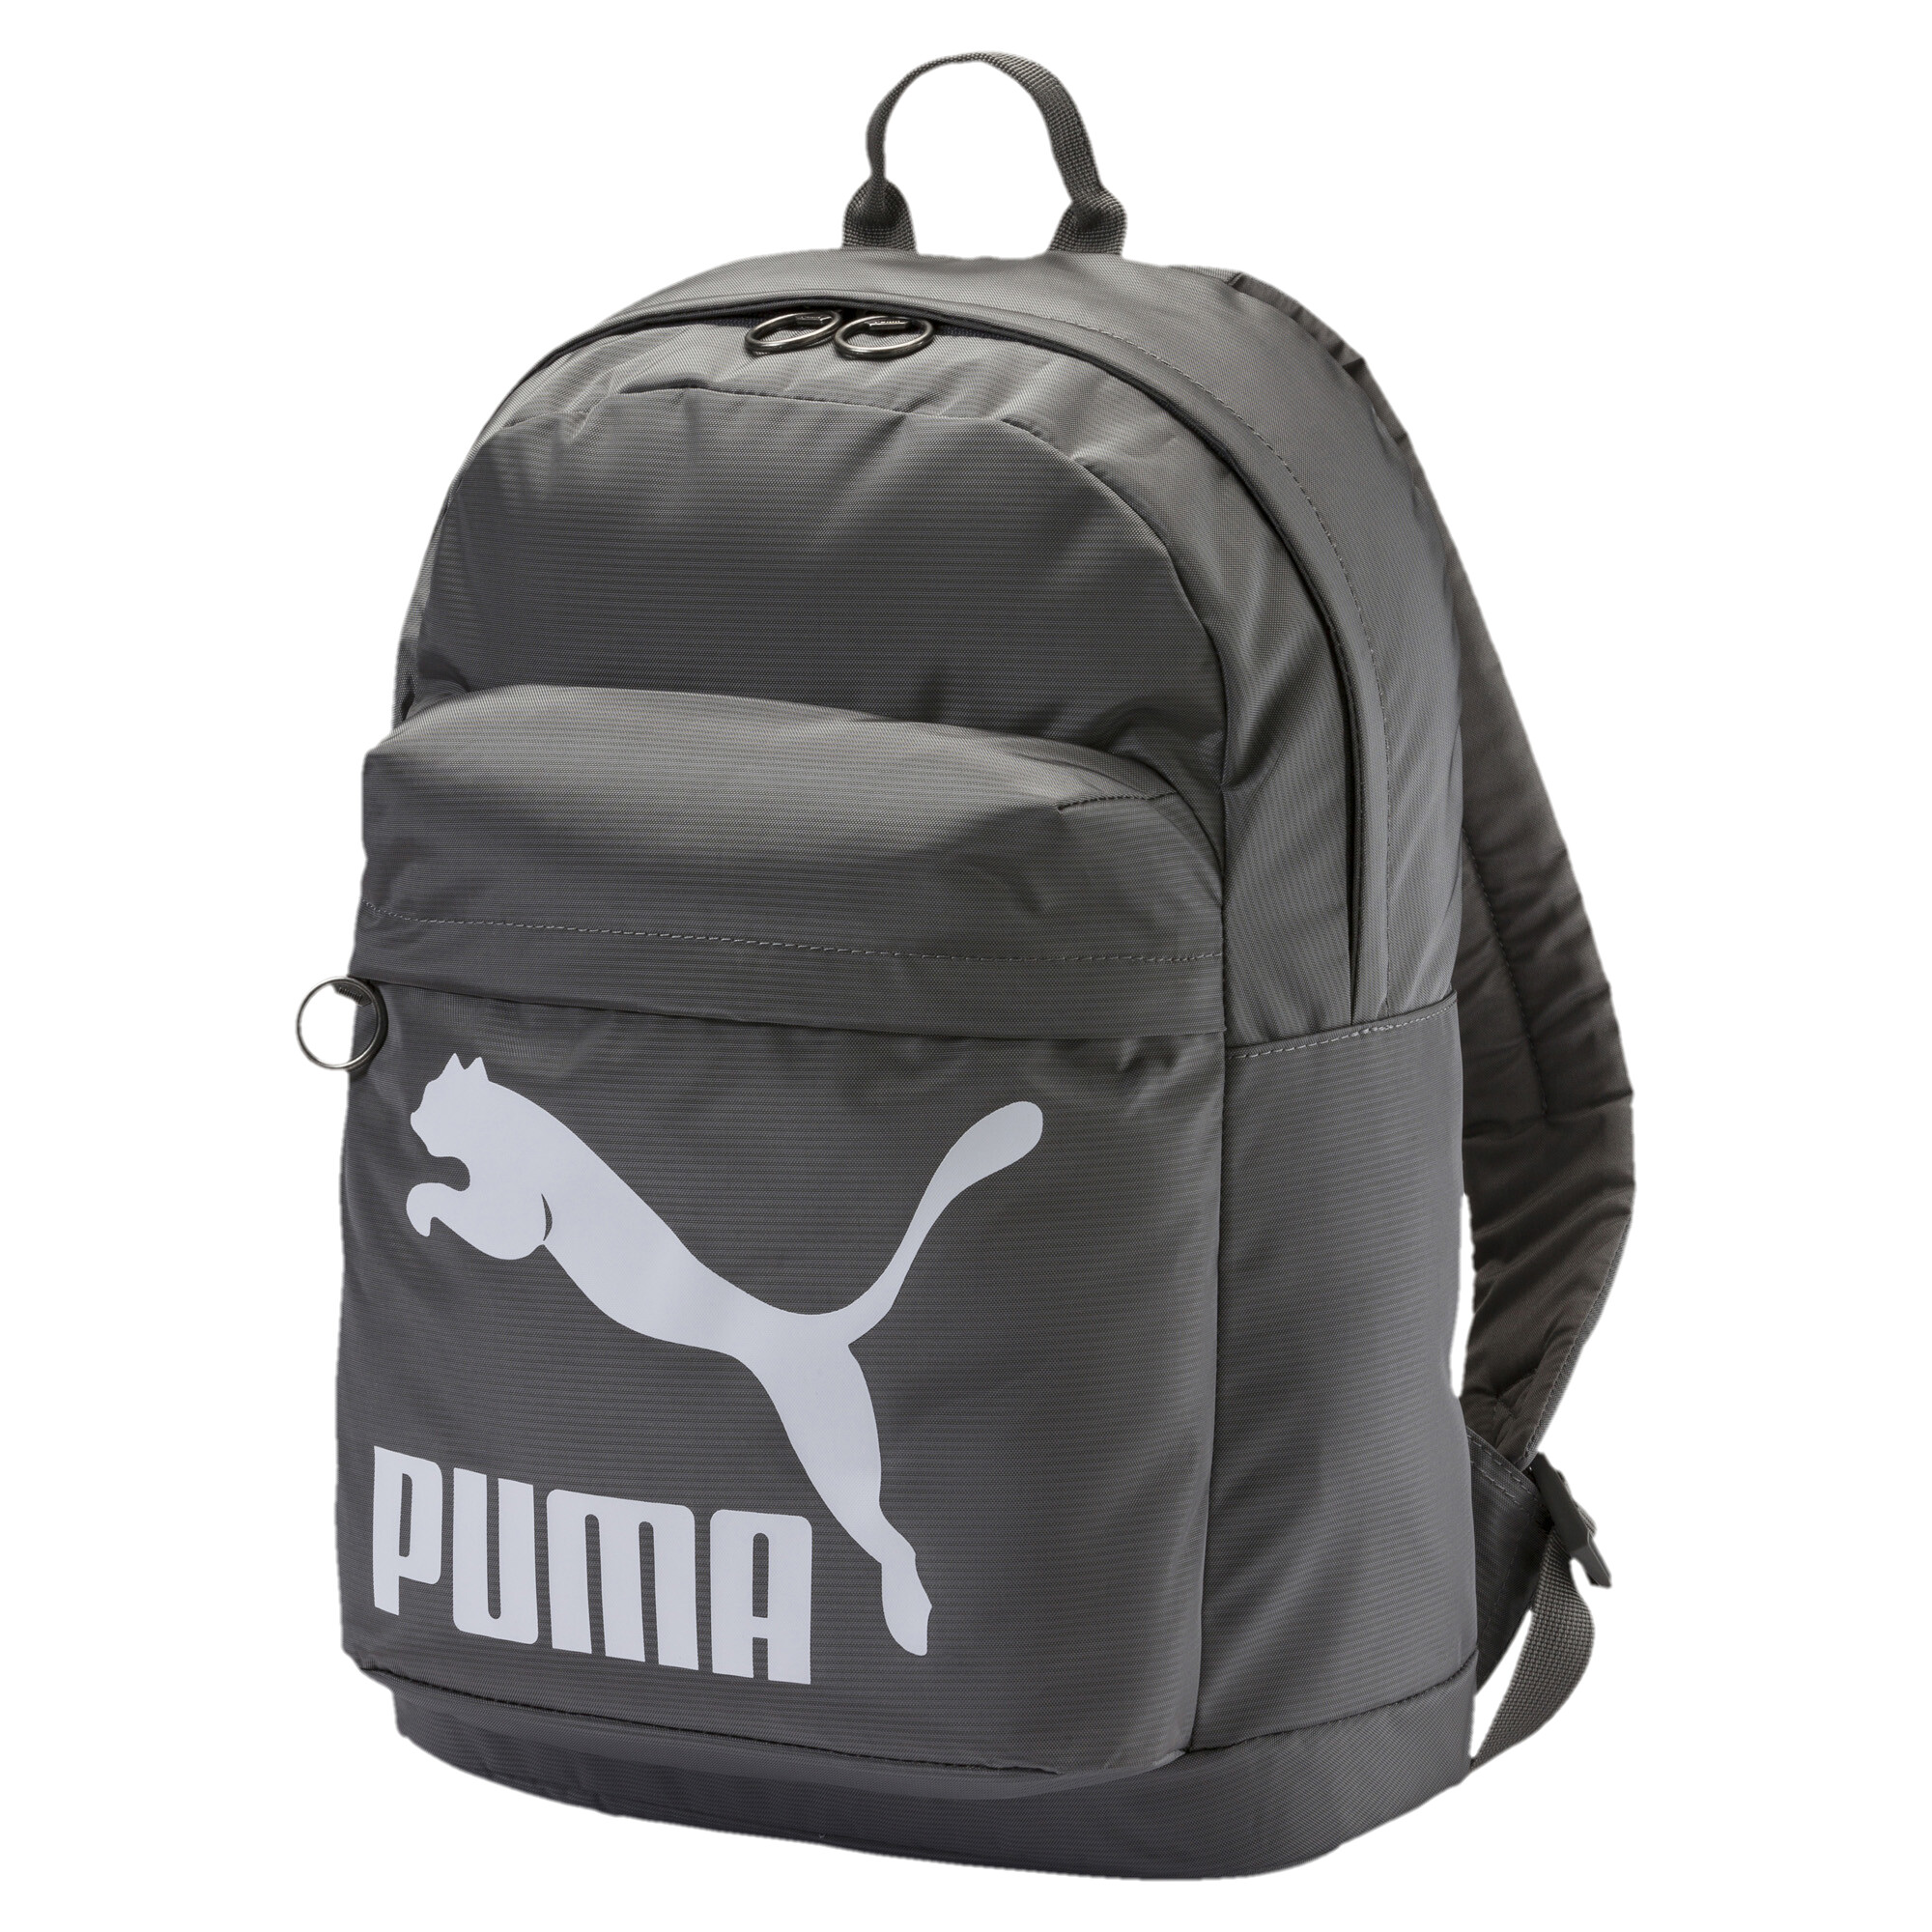 Men's Puma Originals Backpack, Gray, Accessories